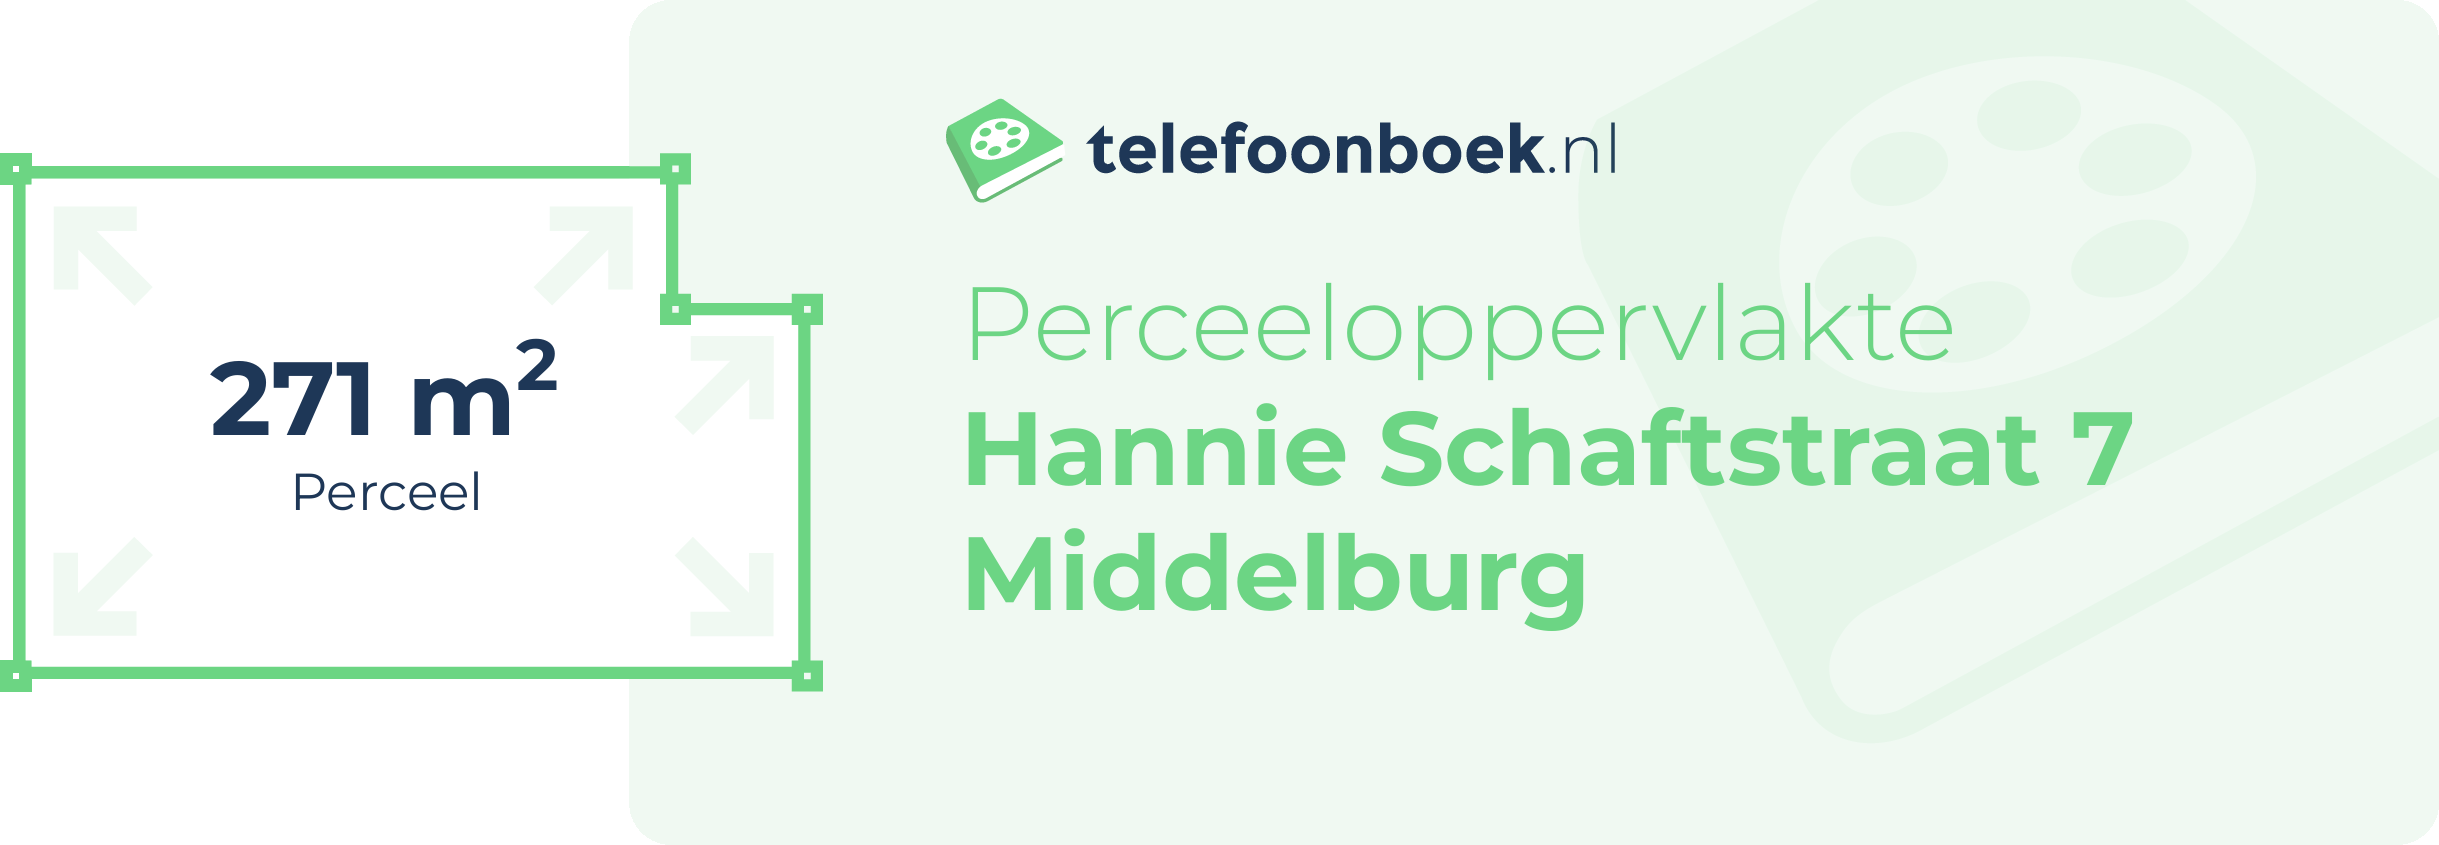 Perceeloppervlakte Hannie Schaftstraat 7 Middelburg